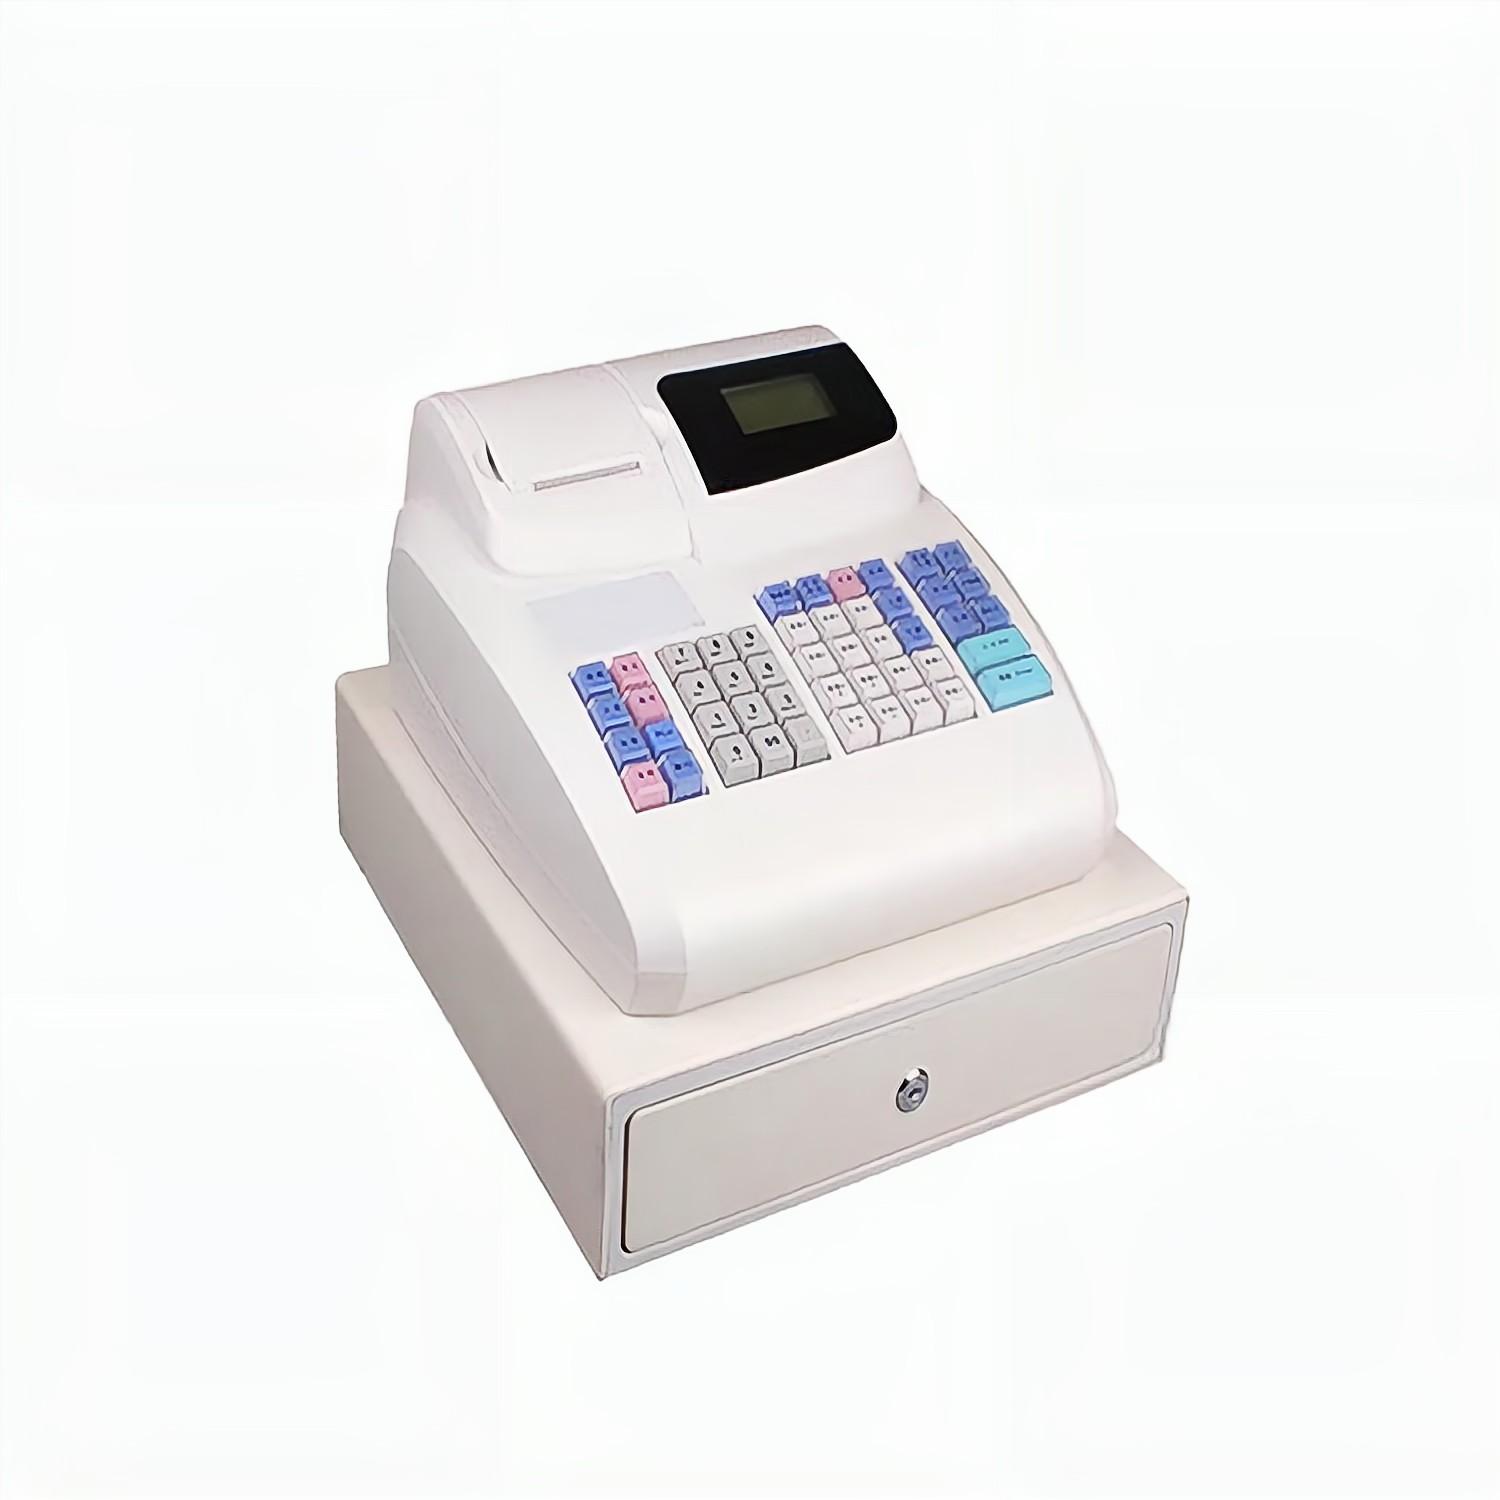 HCCTG 48 Keys 2000 Plus Smart Electronic Ordering Machine Register ECR800